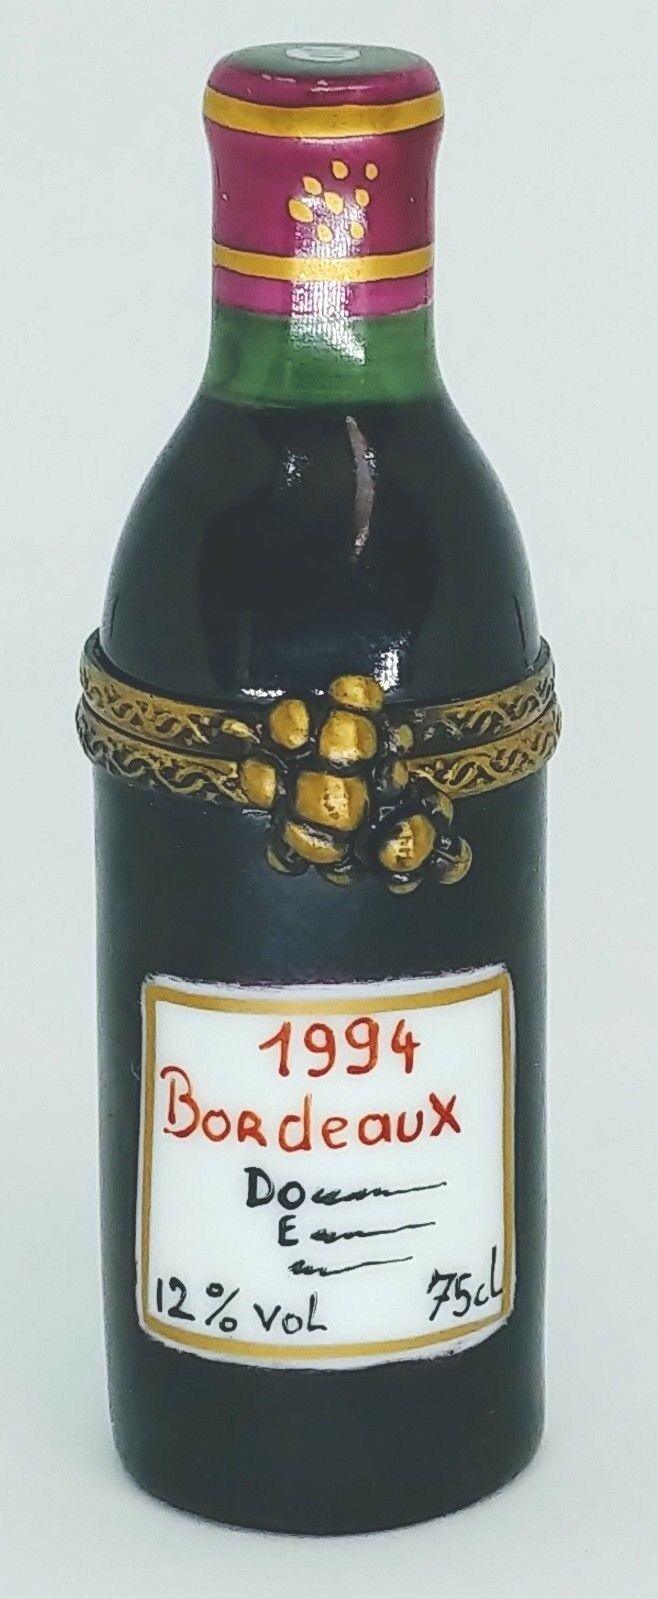 LIMOGES TRINKET BOX BOTTLE OF WINE, BORDEAUX 1994 EXIMIOUS